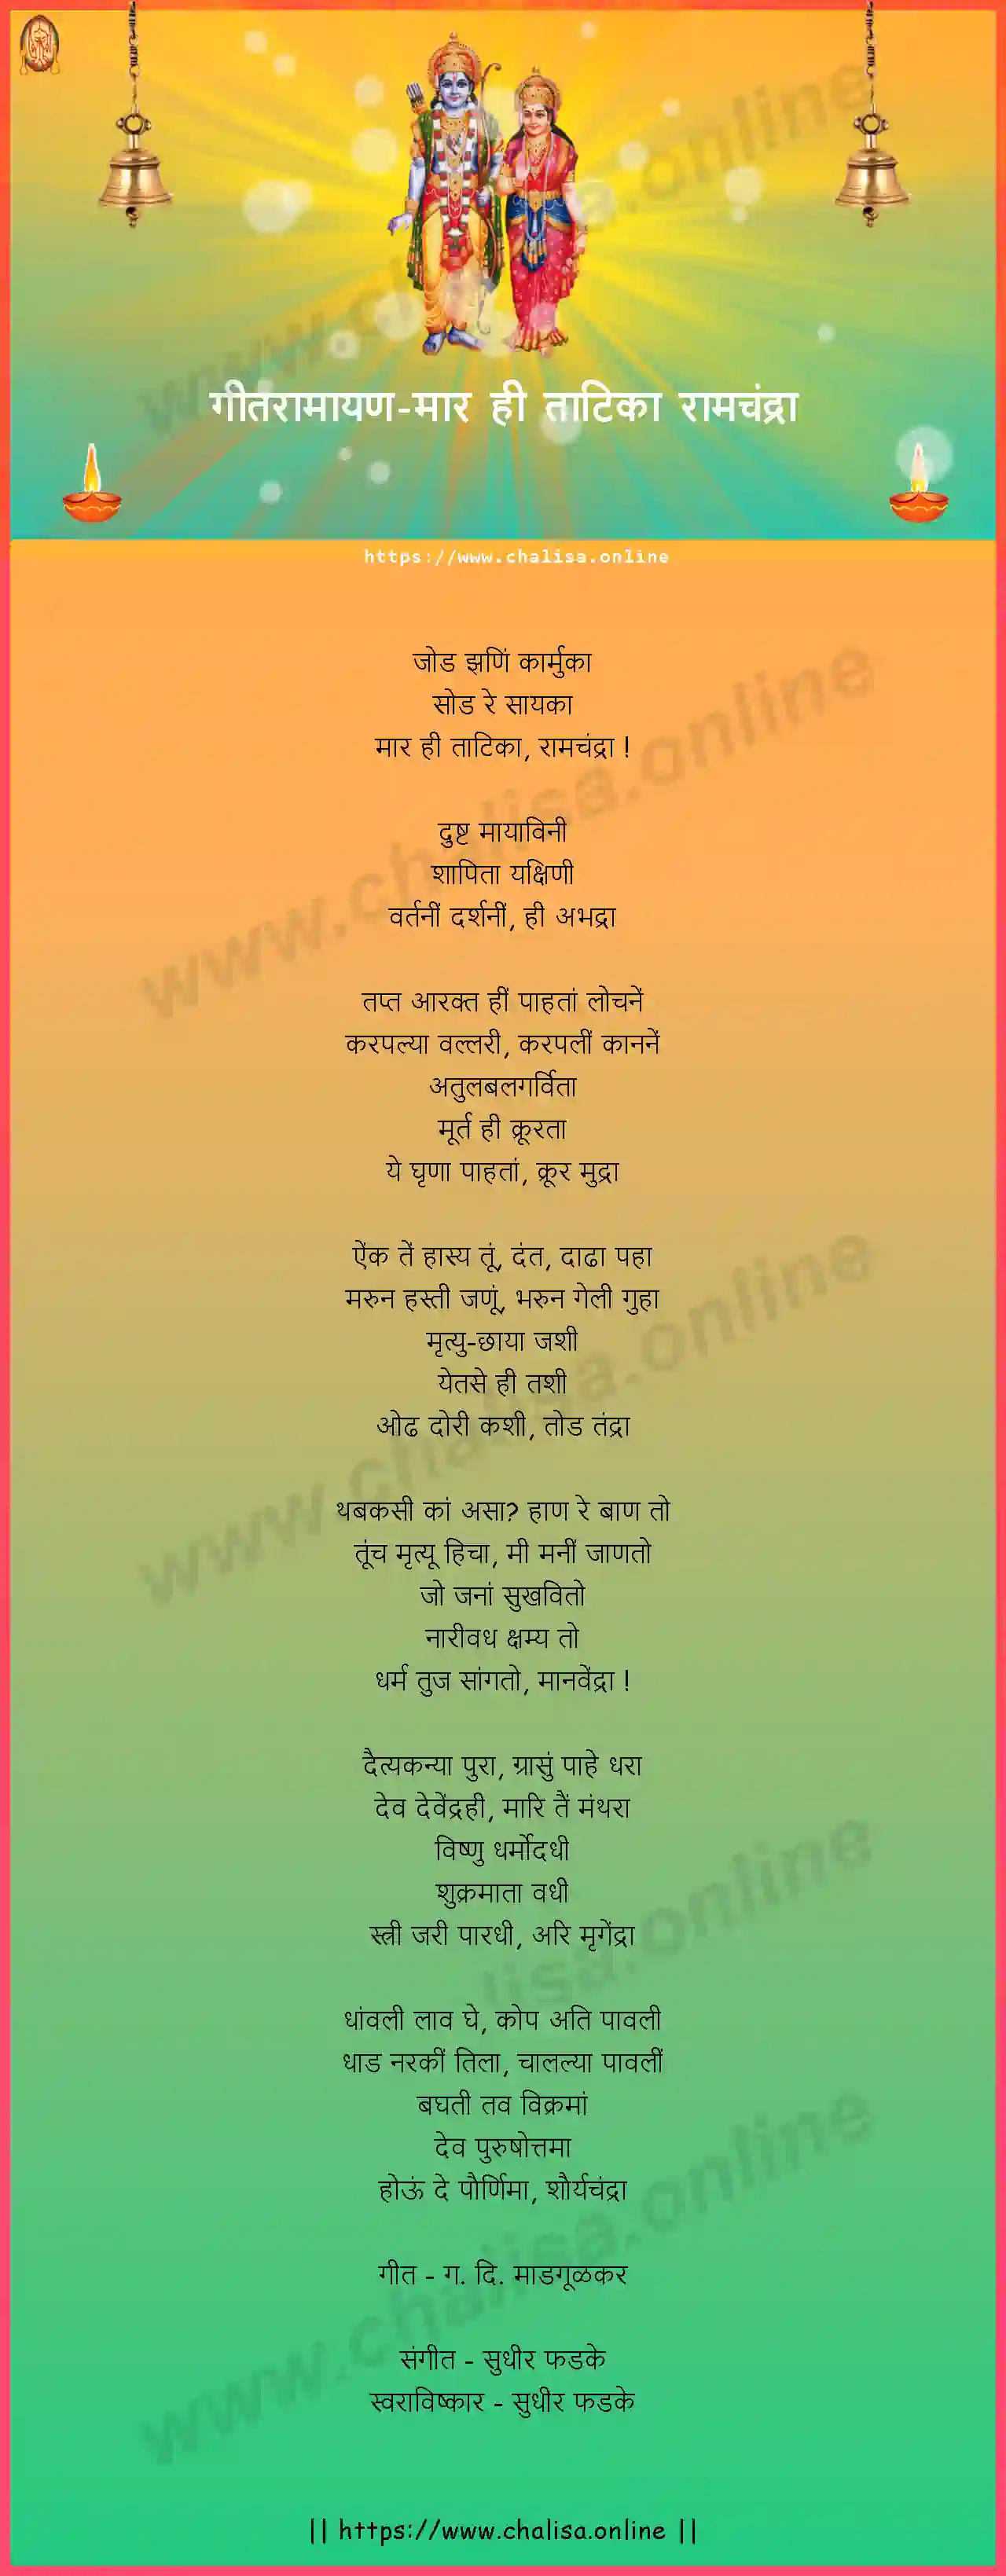 maar-hi-tratika-ramchandra-geet-ramayan-marathi-lyrics-download